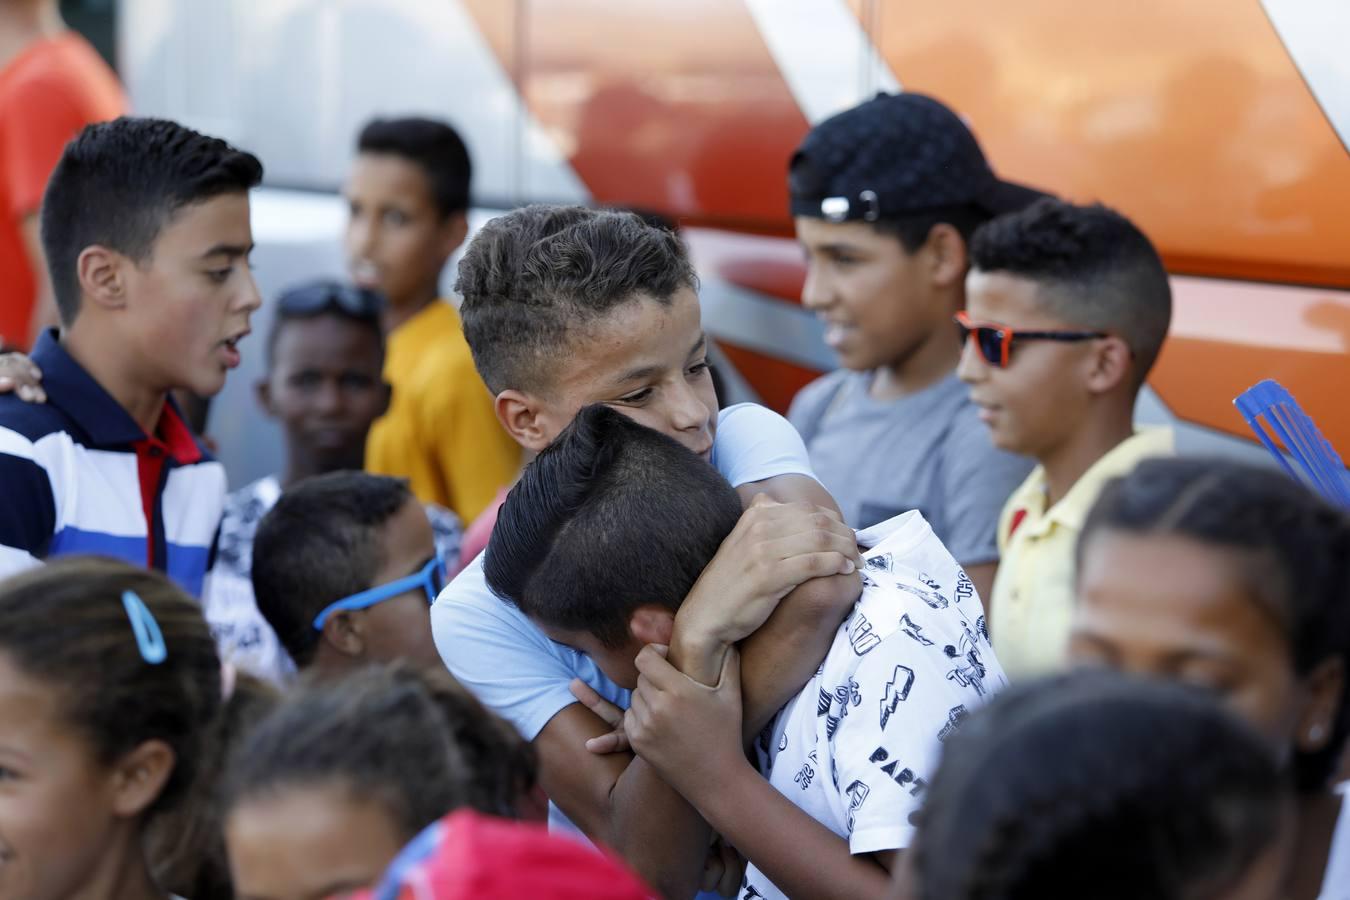 La despedida de los niños saharauis, en imágenes